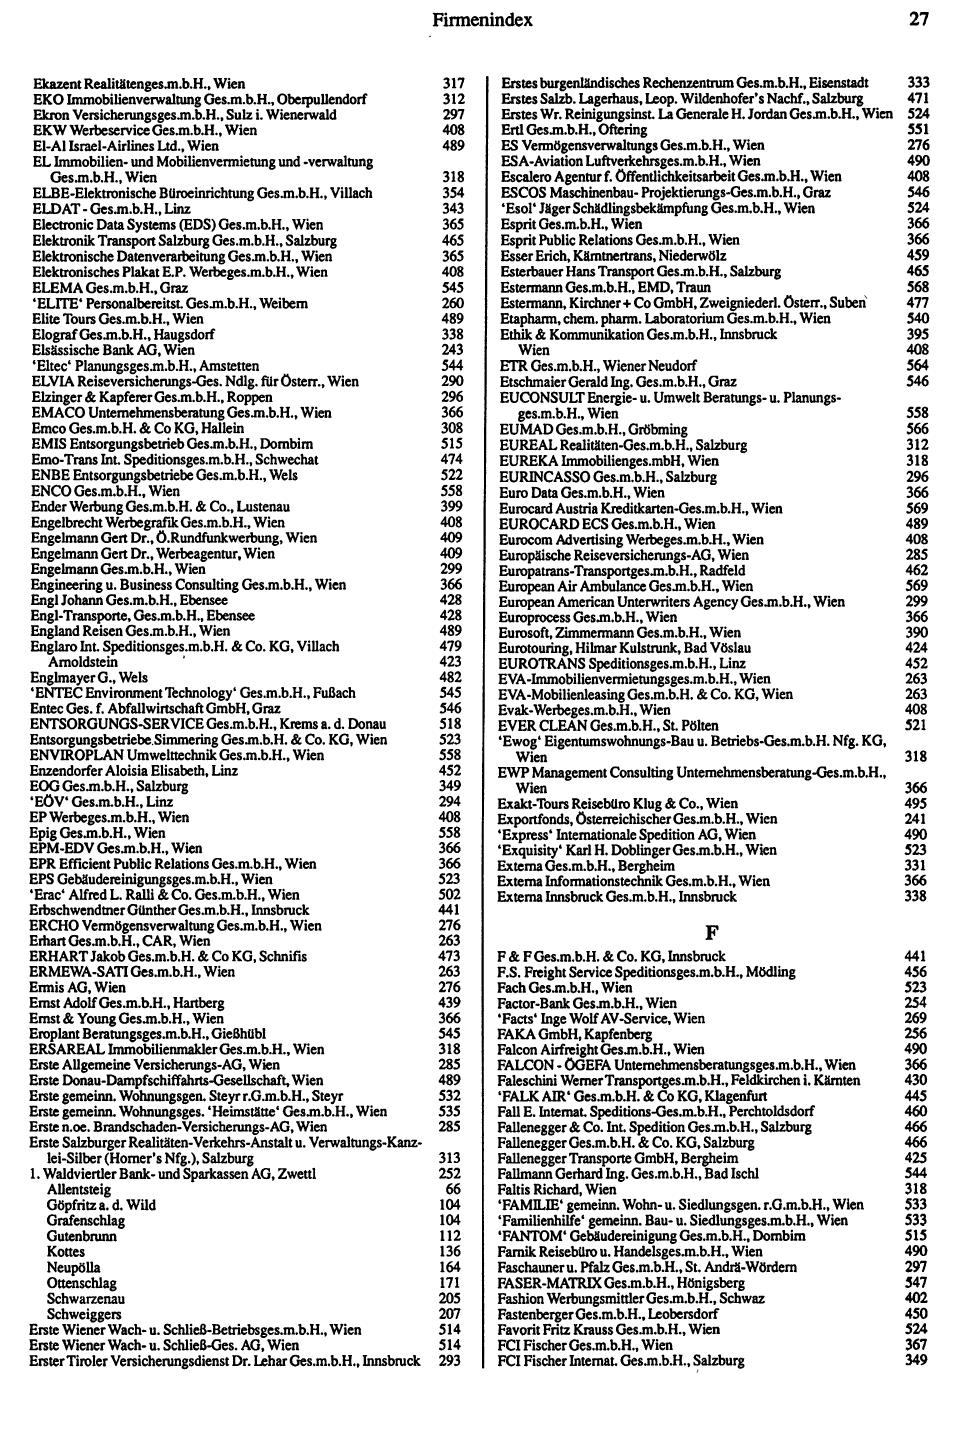 Dienstleistungs-Compass 1991/92 - Seite 29